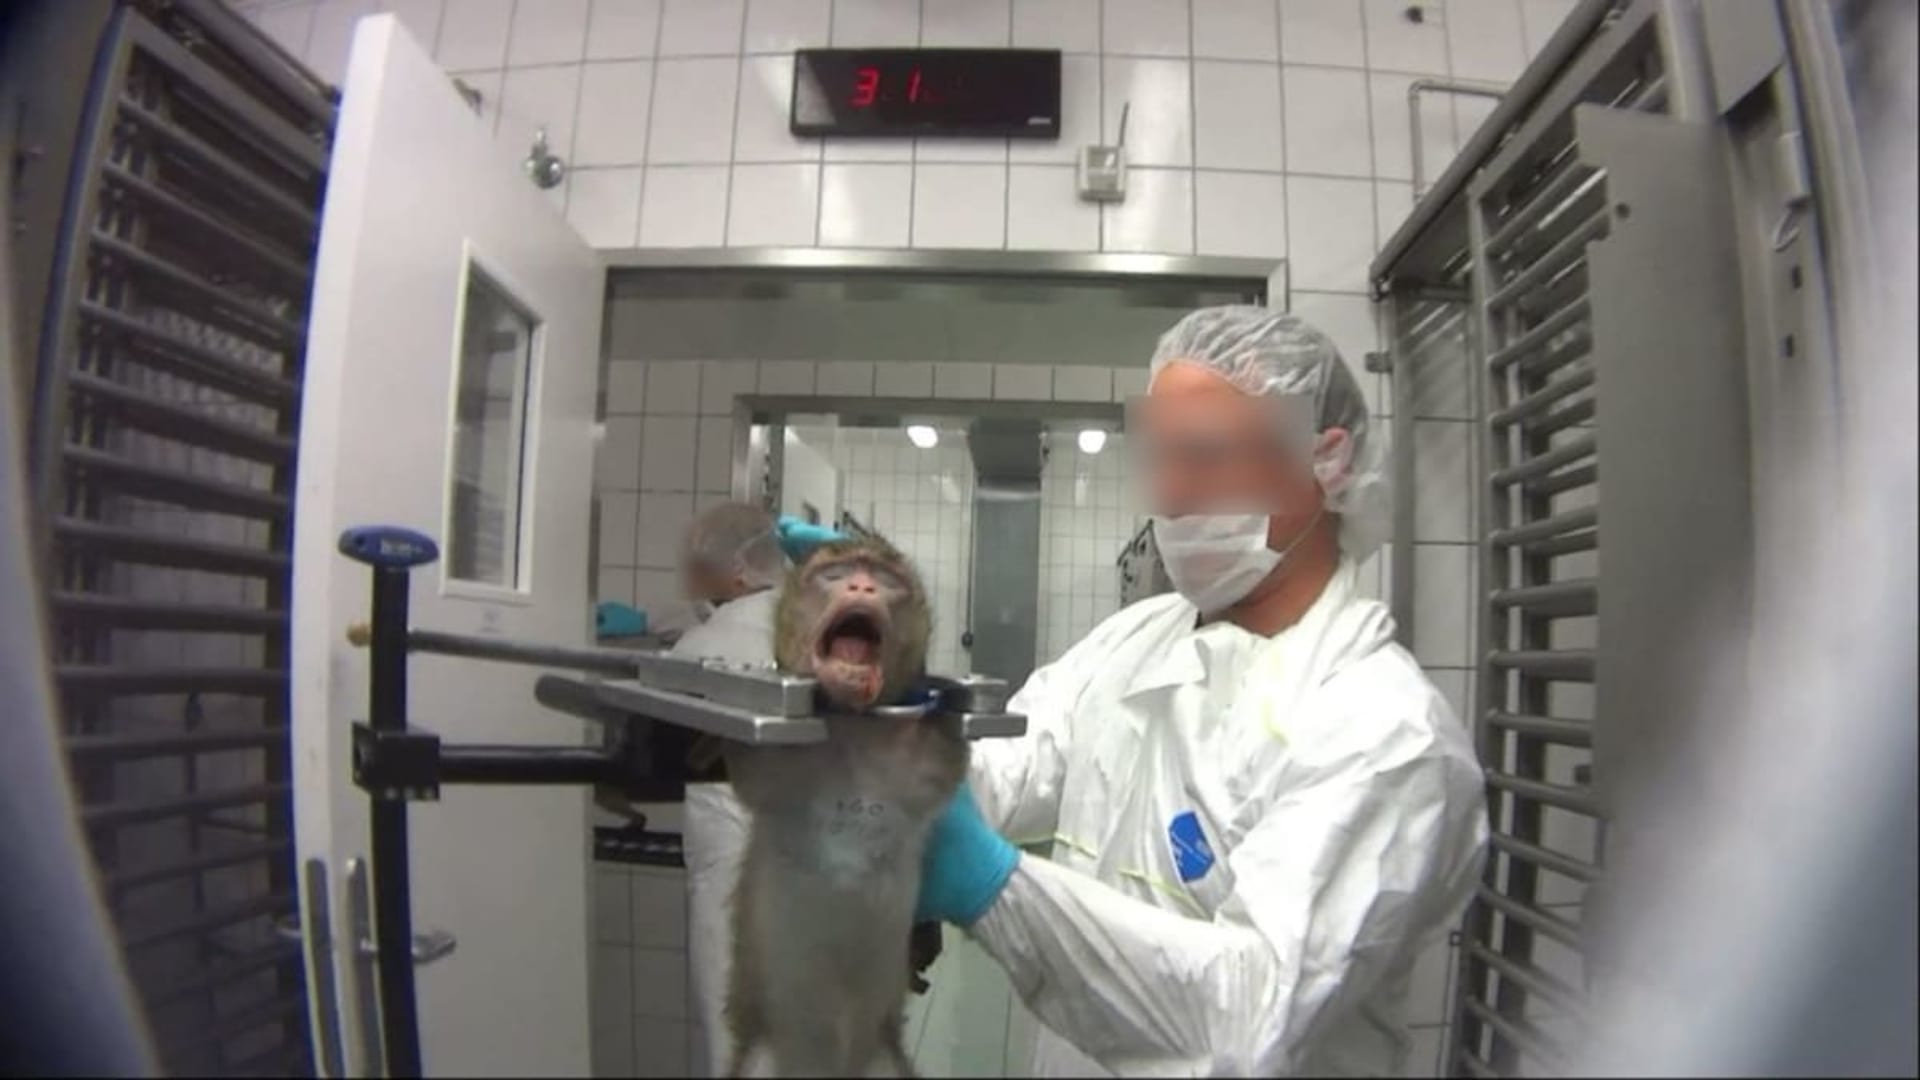 Investigace ochránců zvířat odhalila kruté zacházení se zvířaty v laboratoři.